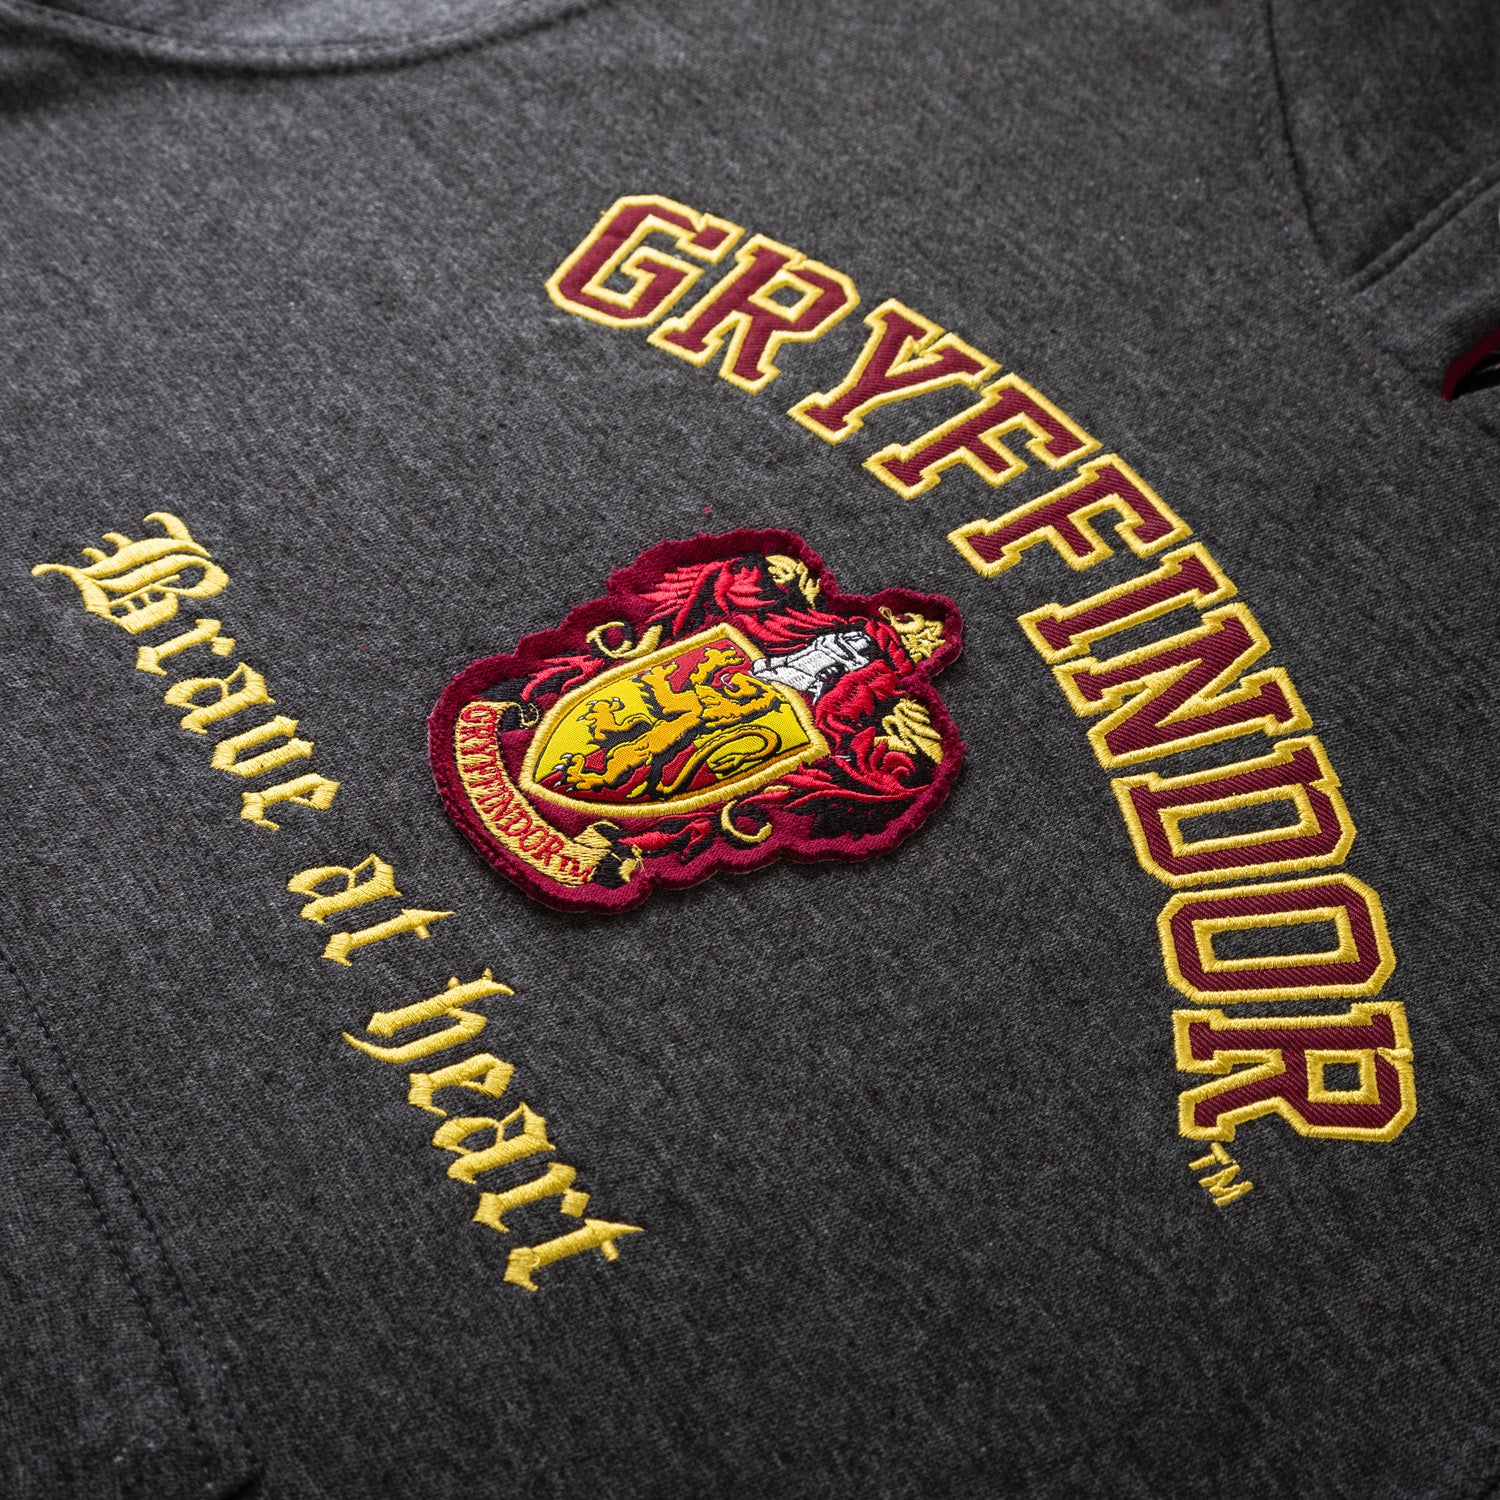 Harry Potter House of Gryffindor Crest - Gryffindor, Slytherin, Ravenc –  Biscotte Yarns